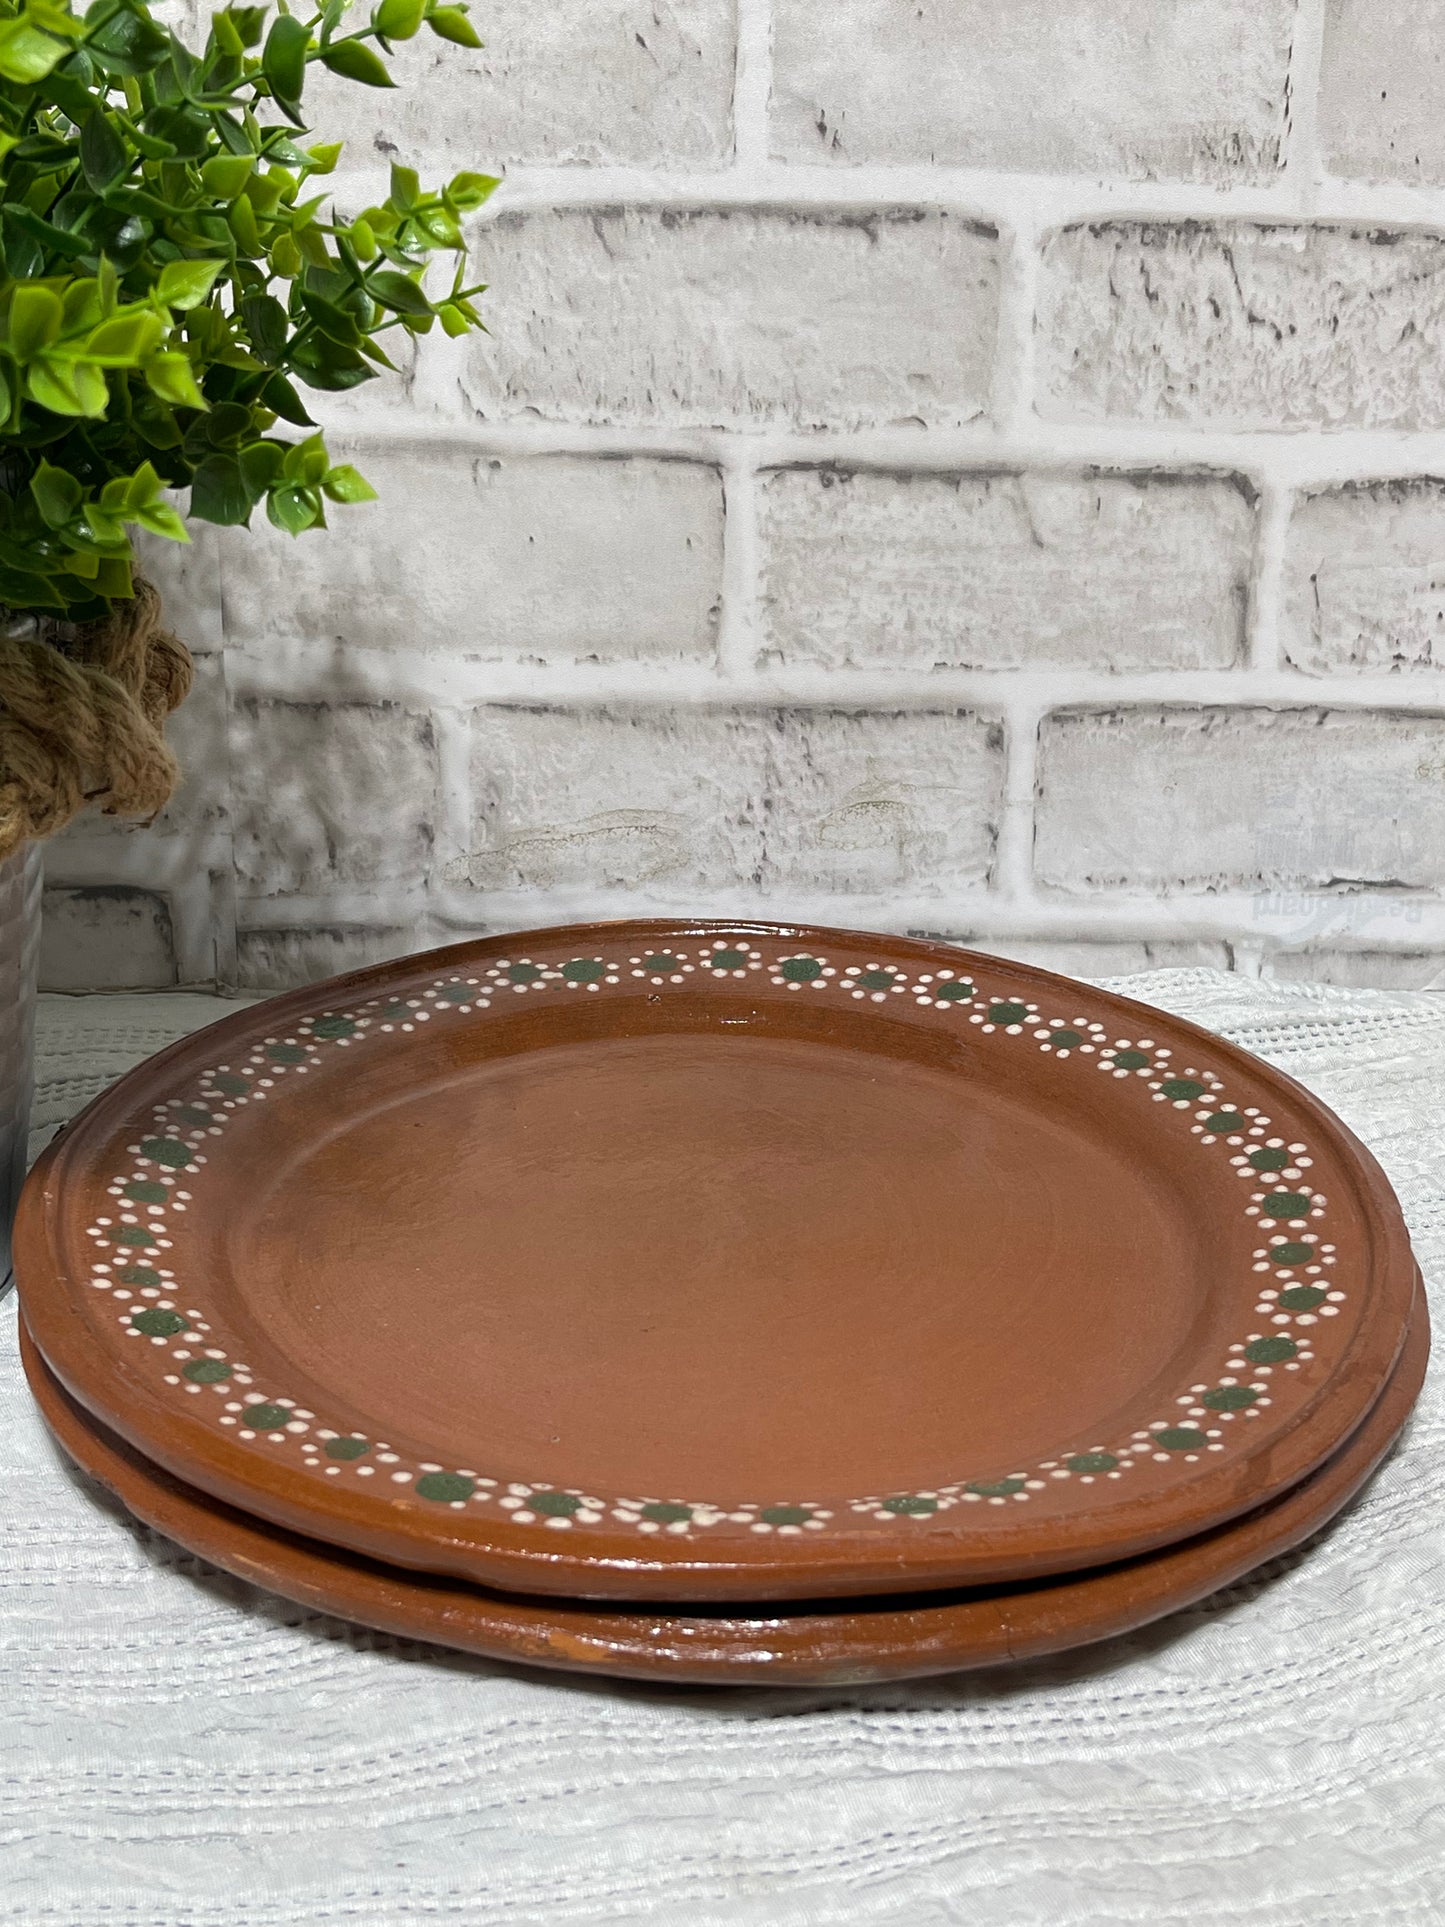 Mexican handmade rustic clay plates set of 2- Plato de barro.